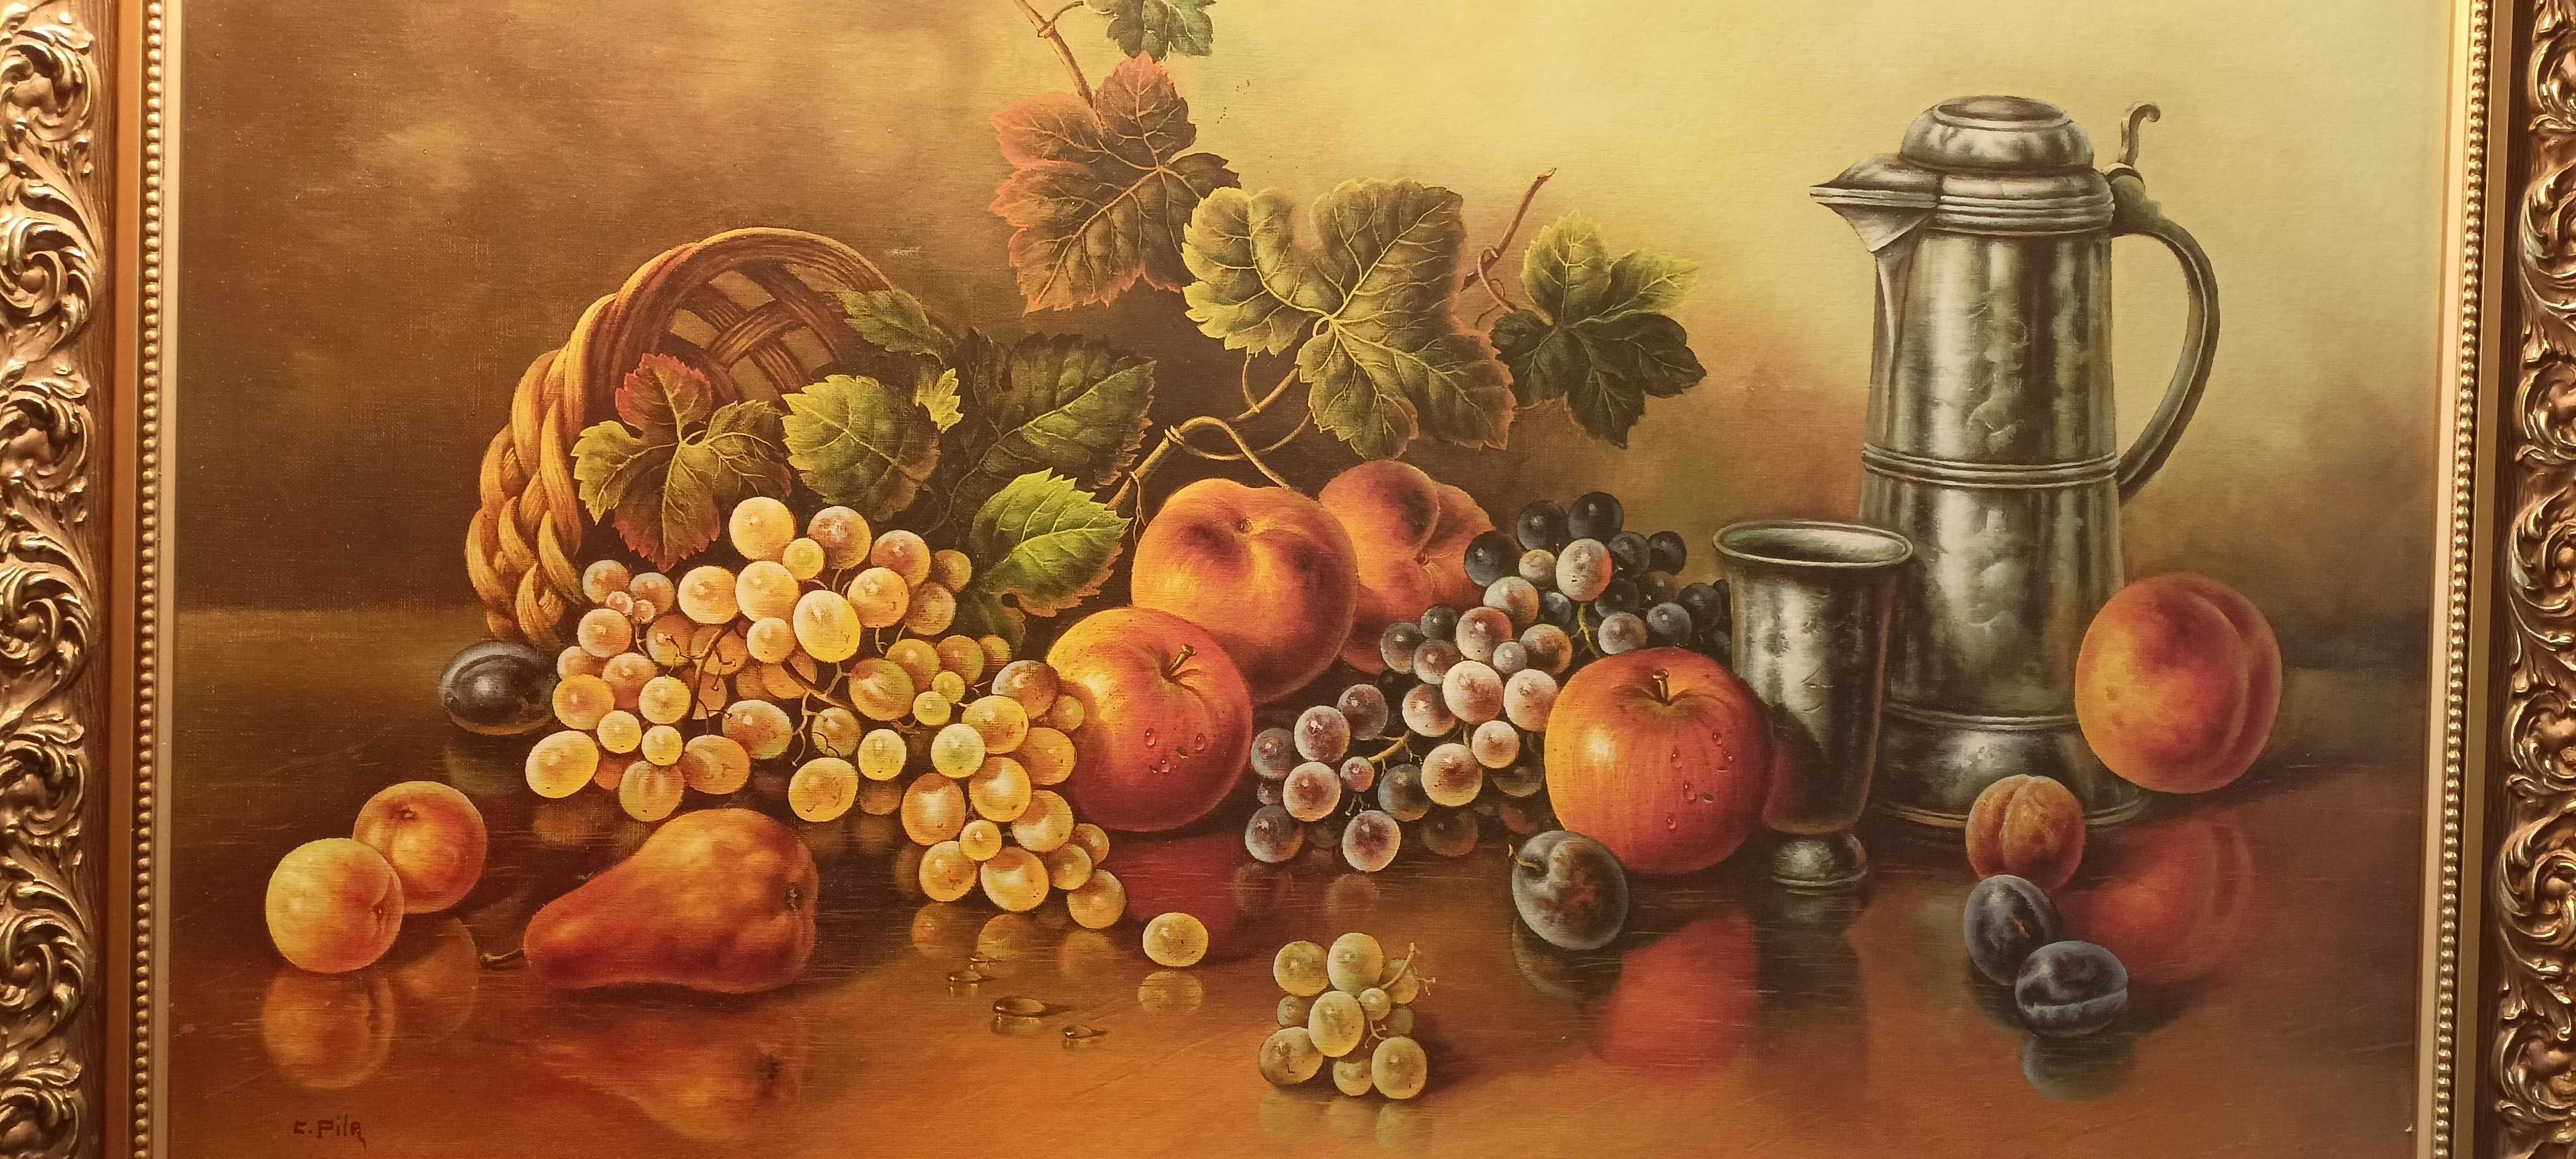 Obraz owoce na stole